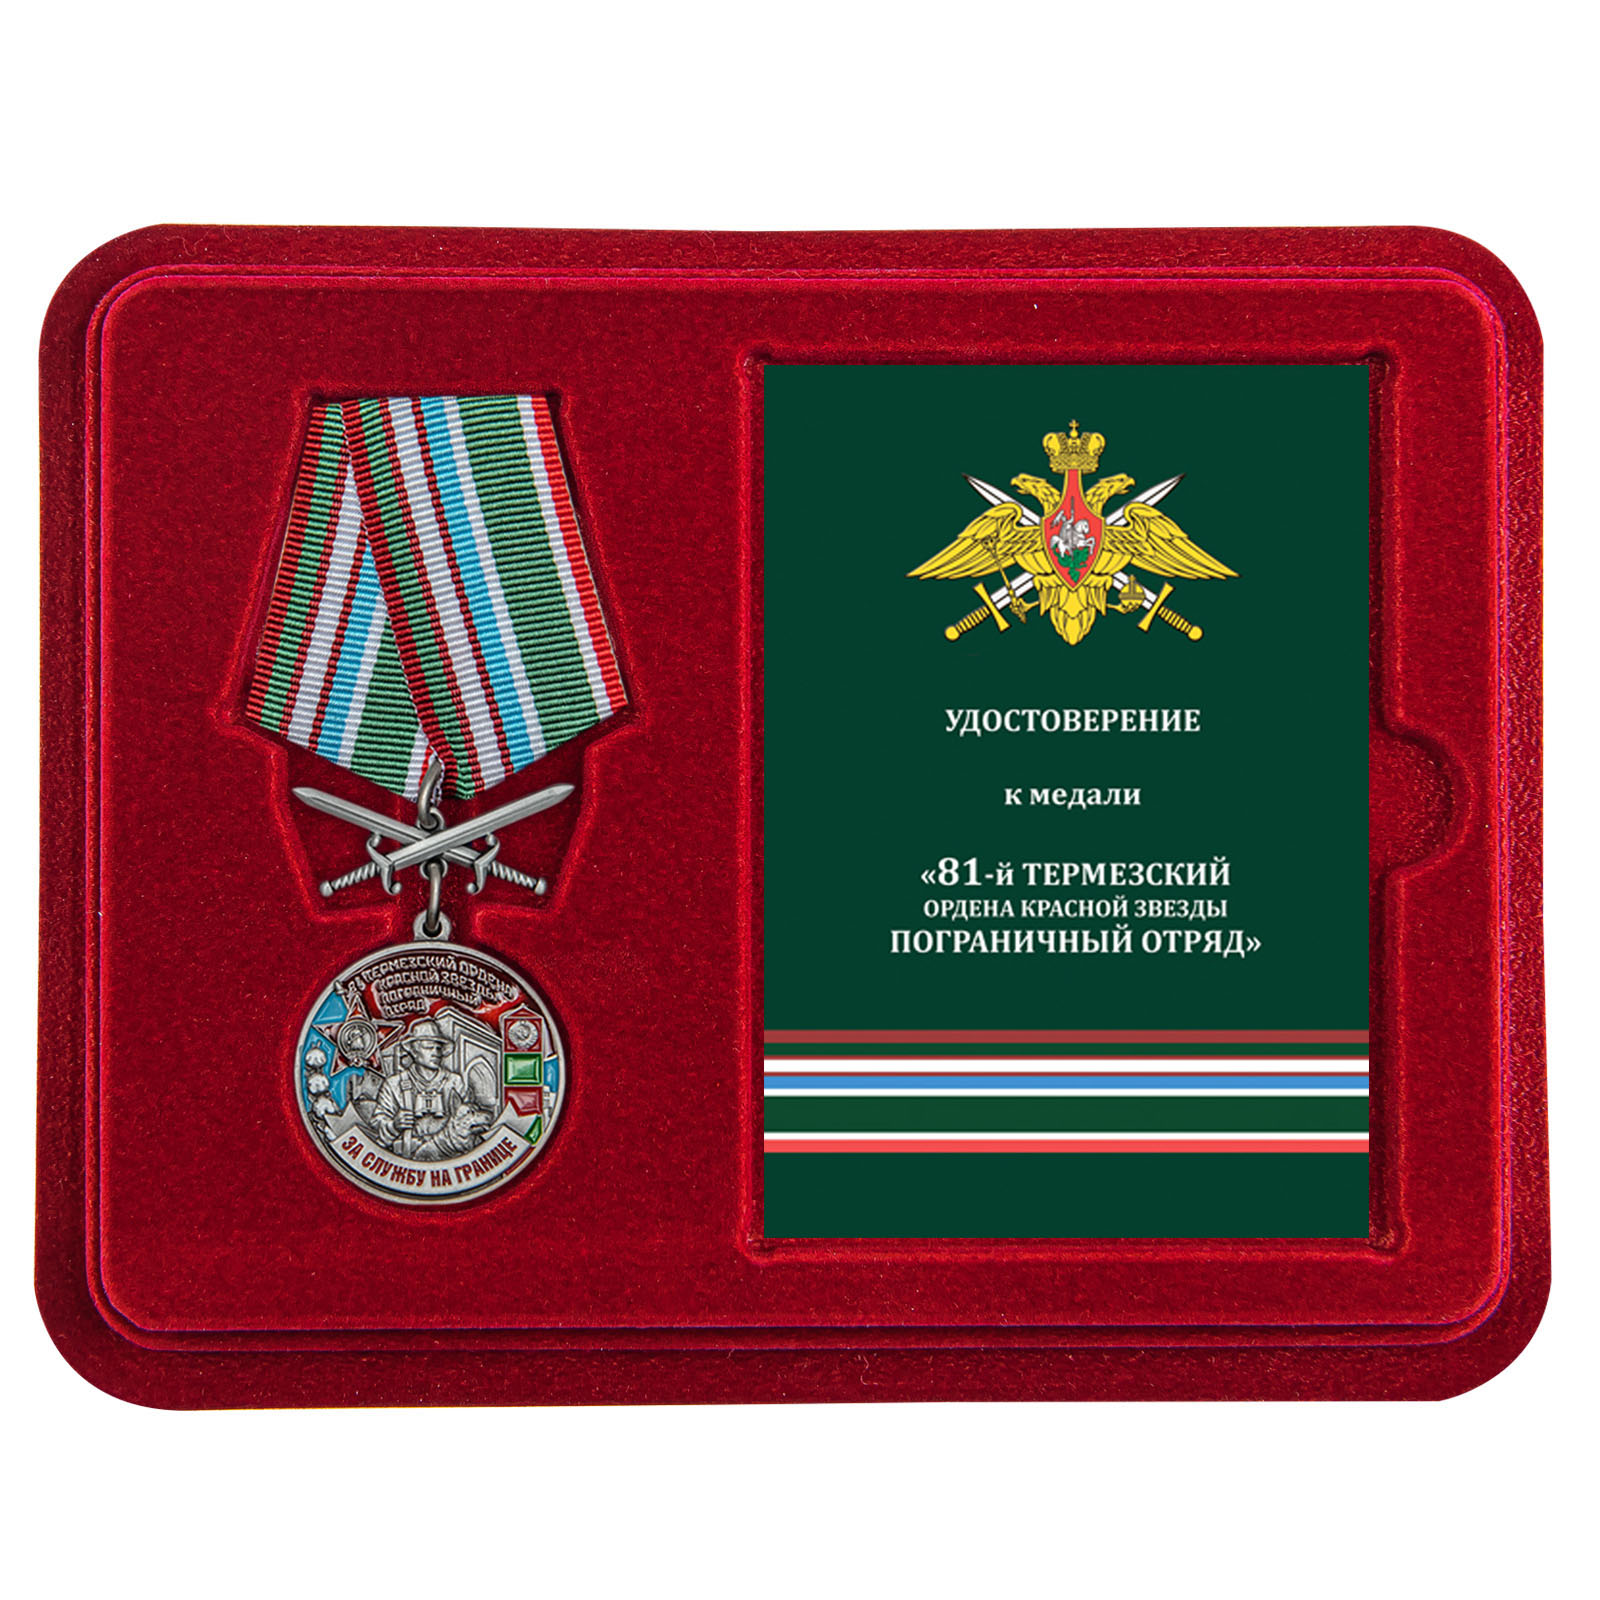 Купить медаль За службу в Термезском пограничном отряде с доставкой